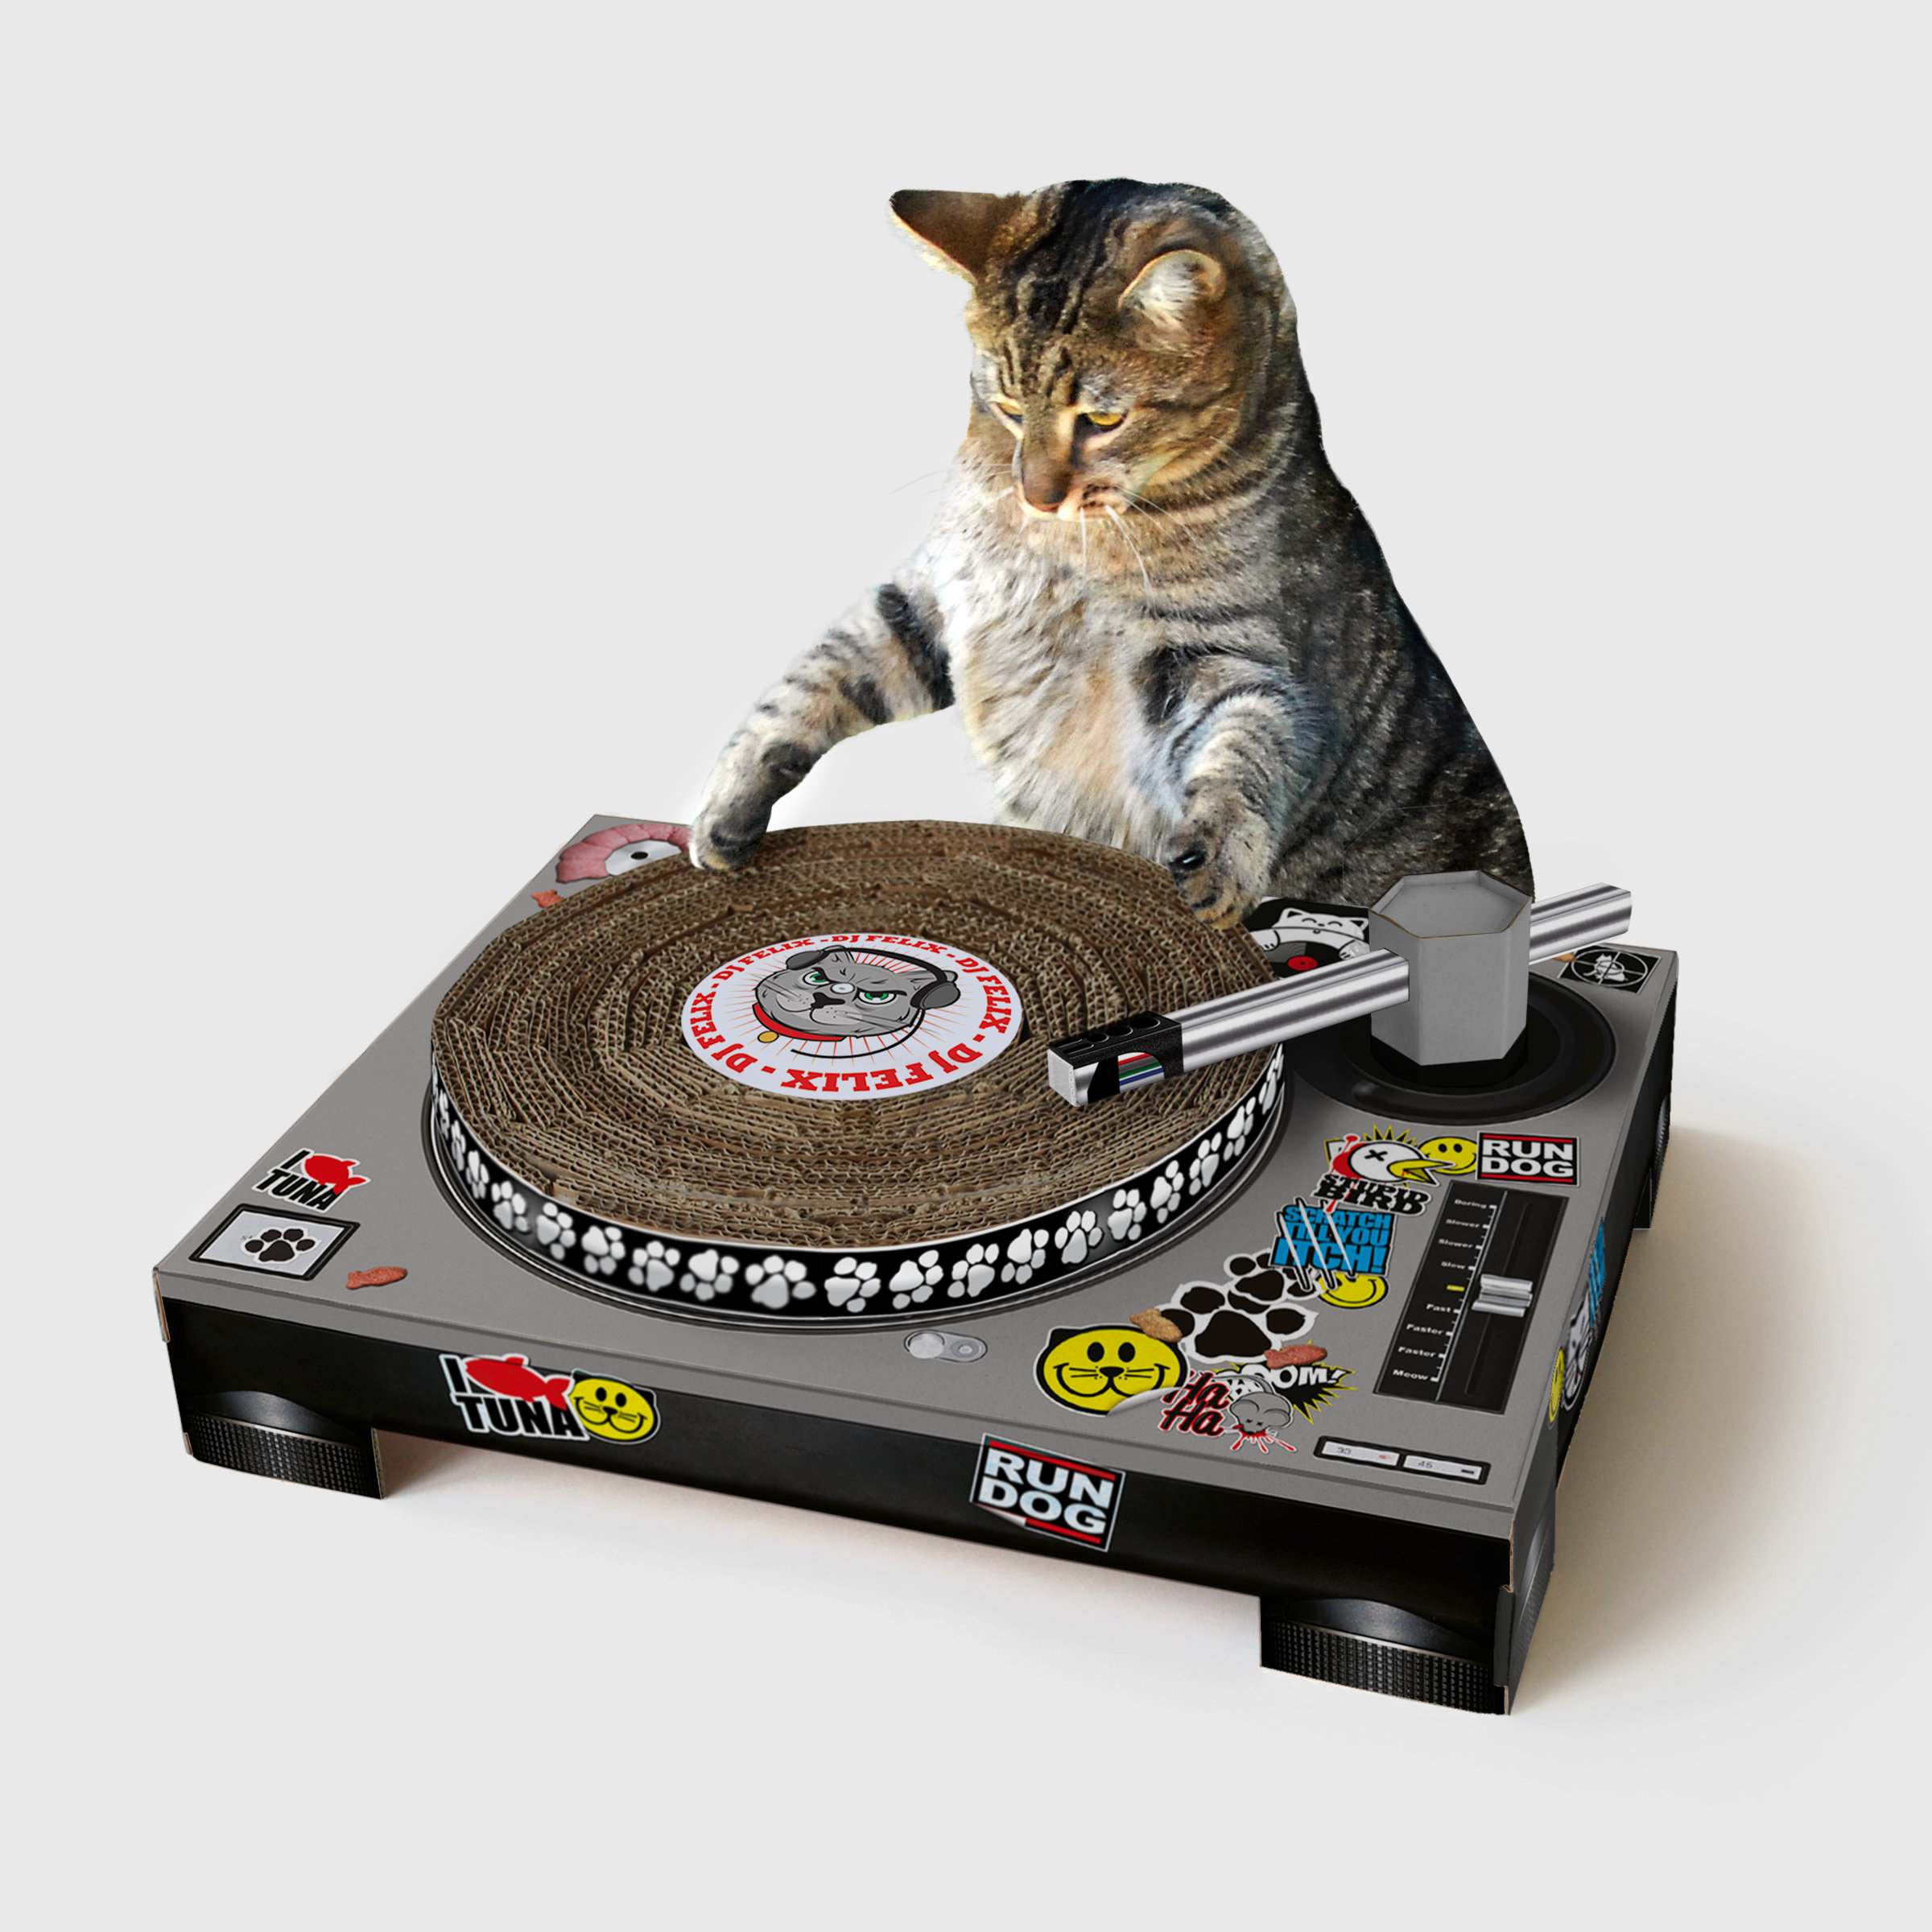 A Cat DJ